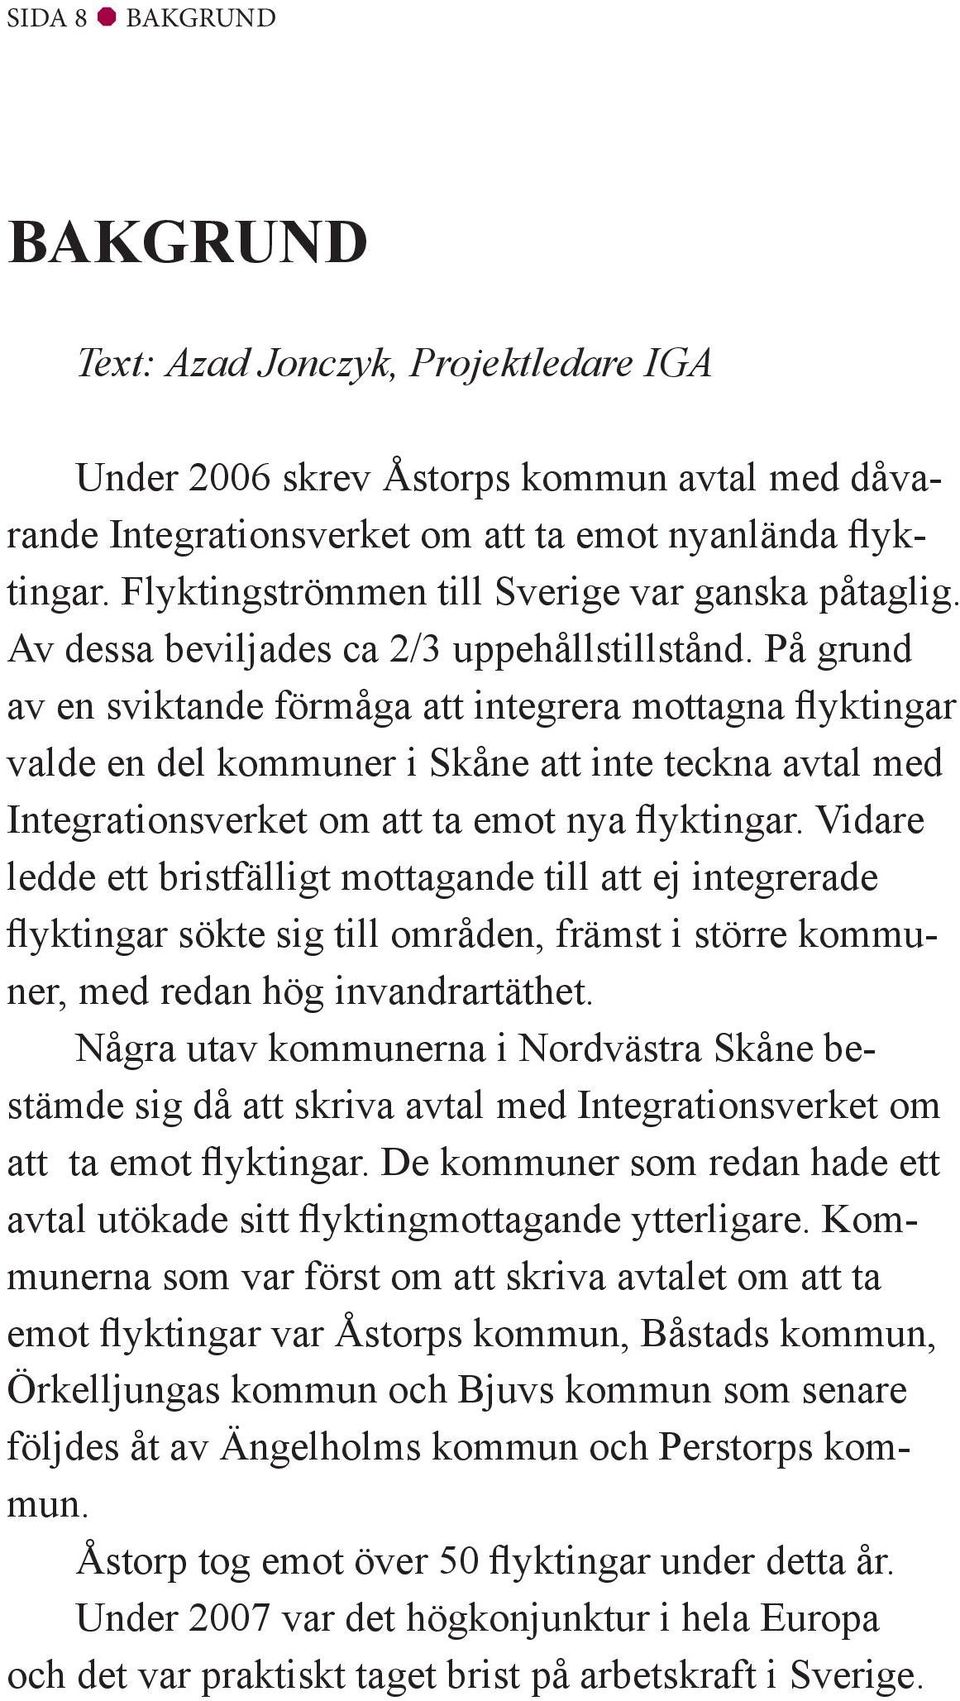 På grund av en sviktande förmåga att integrera mottagna flyktingar valde en del kommuner i Skåne att inte teckna avtal med Integrationsverket om att ta emot nya flyktingar.